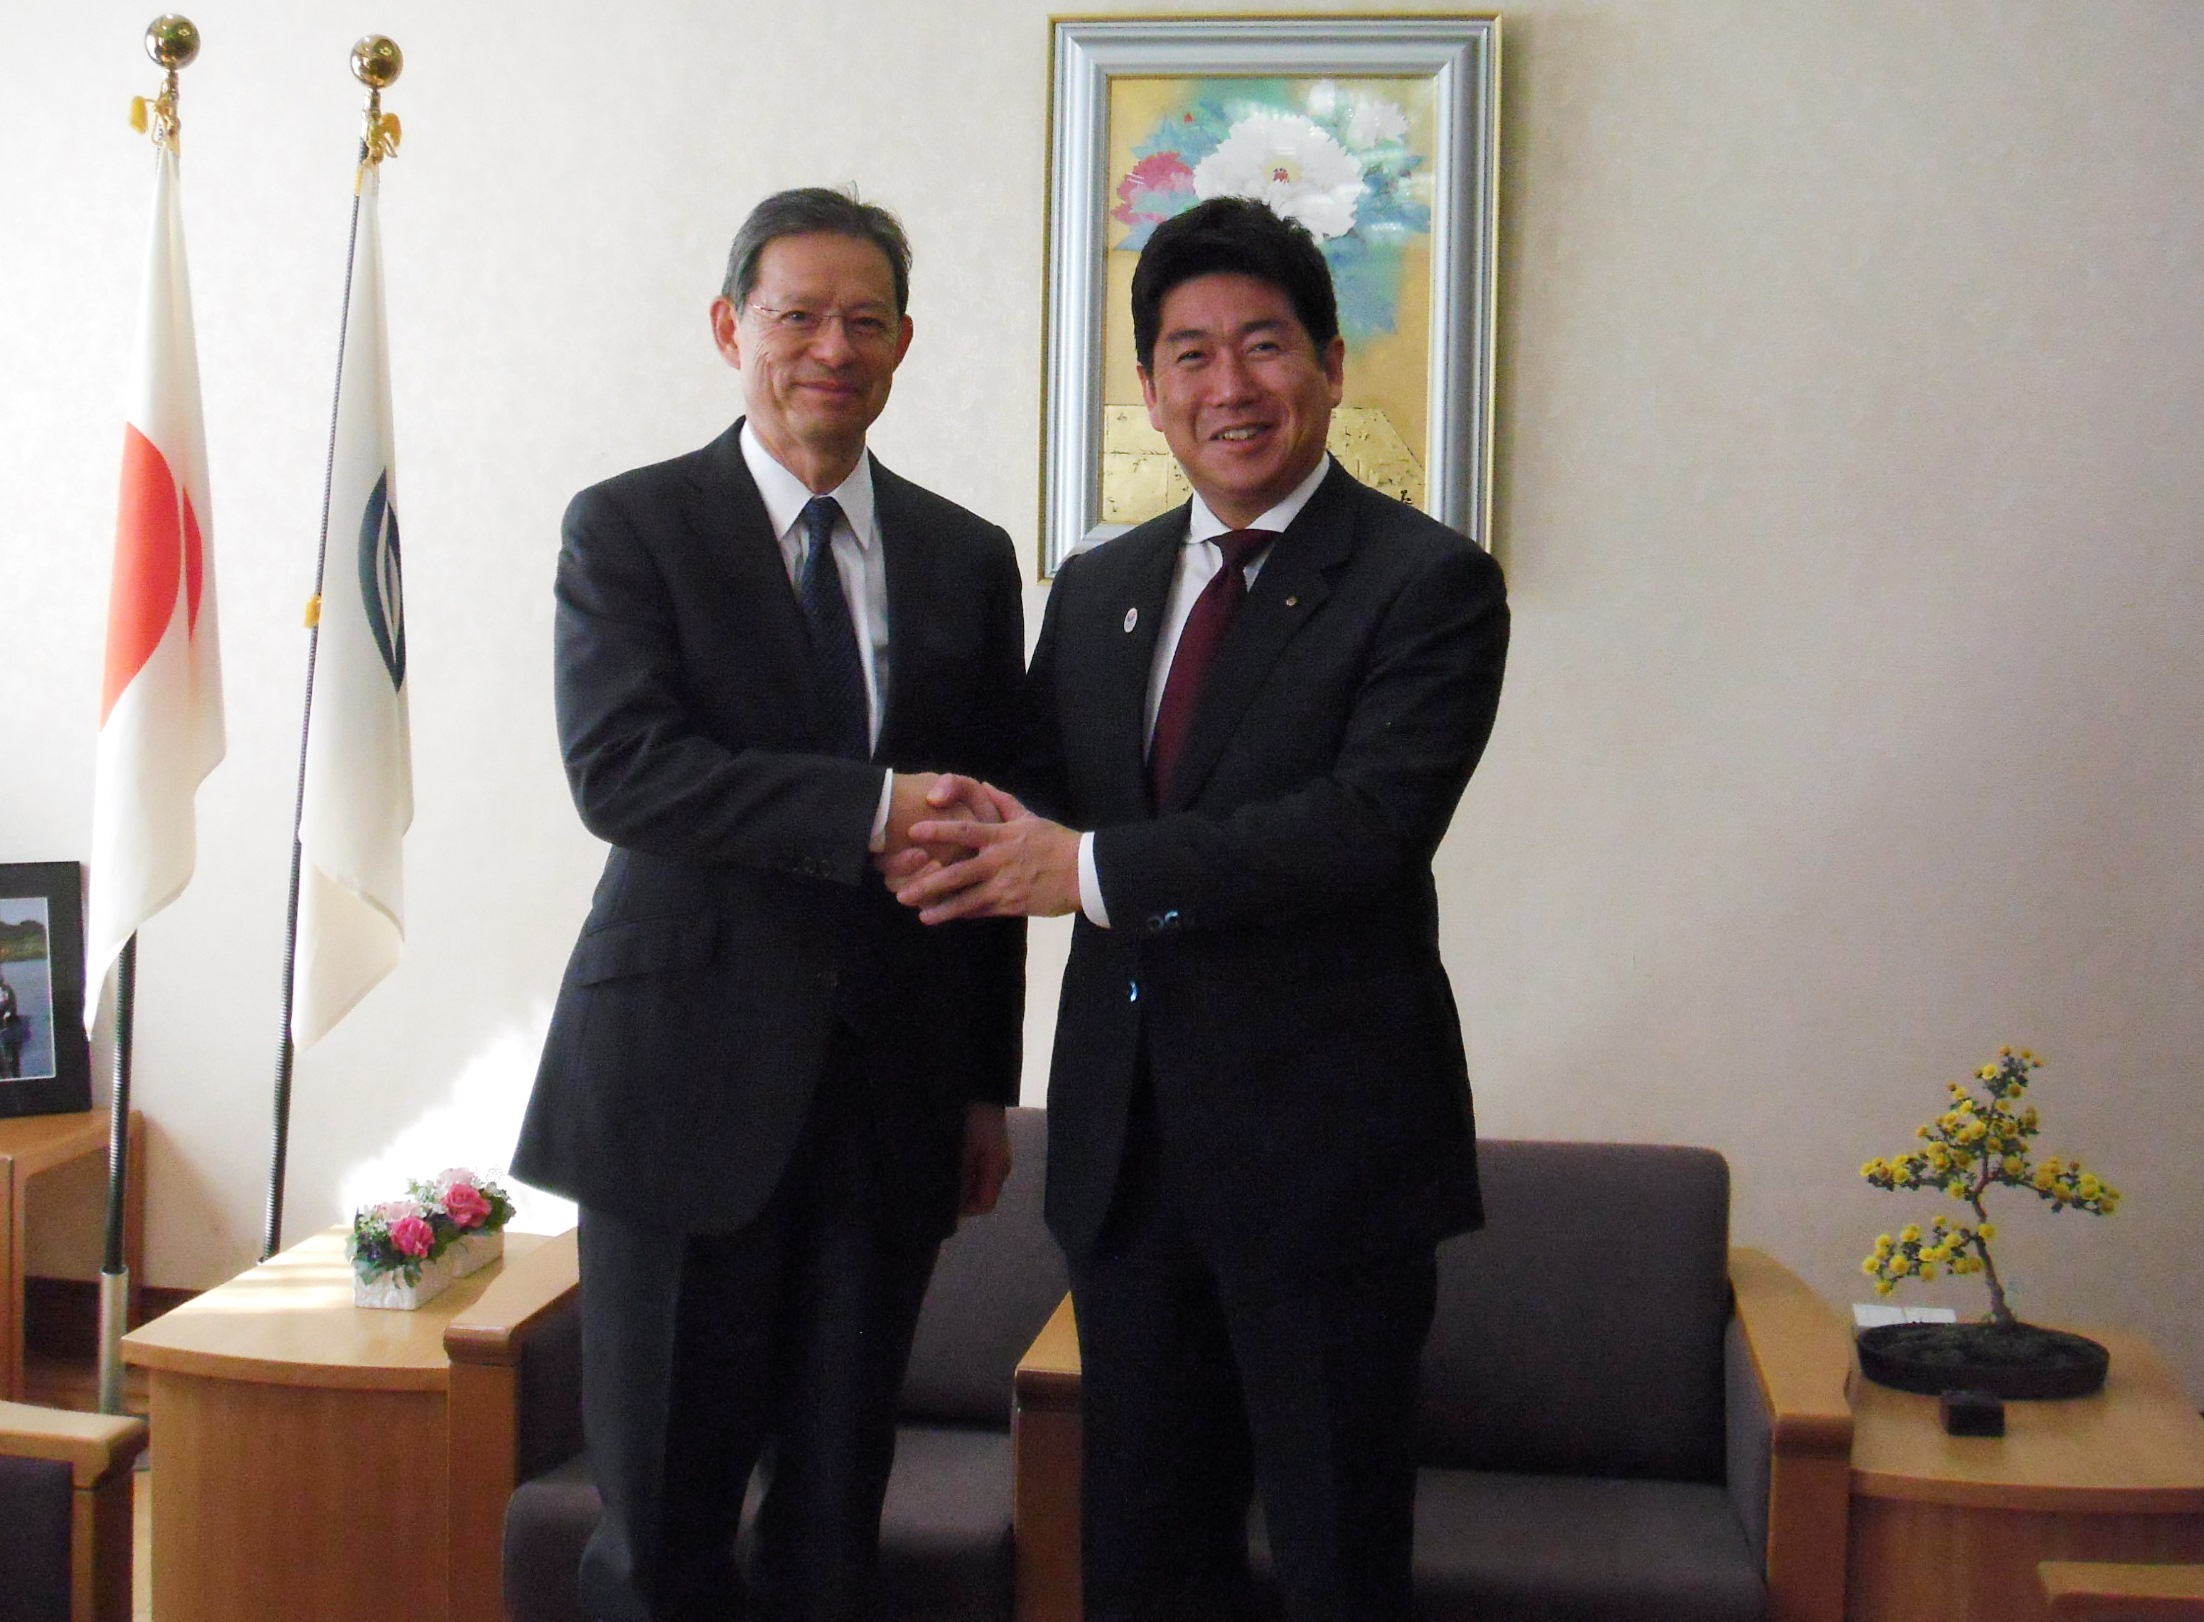 末吉竹二郎氏と握手を交わす市長